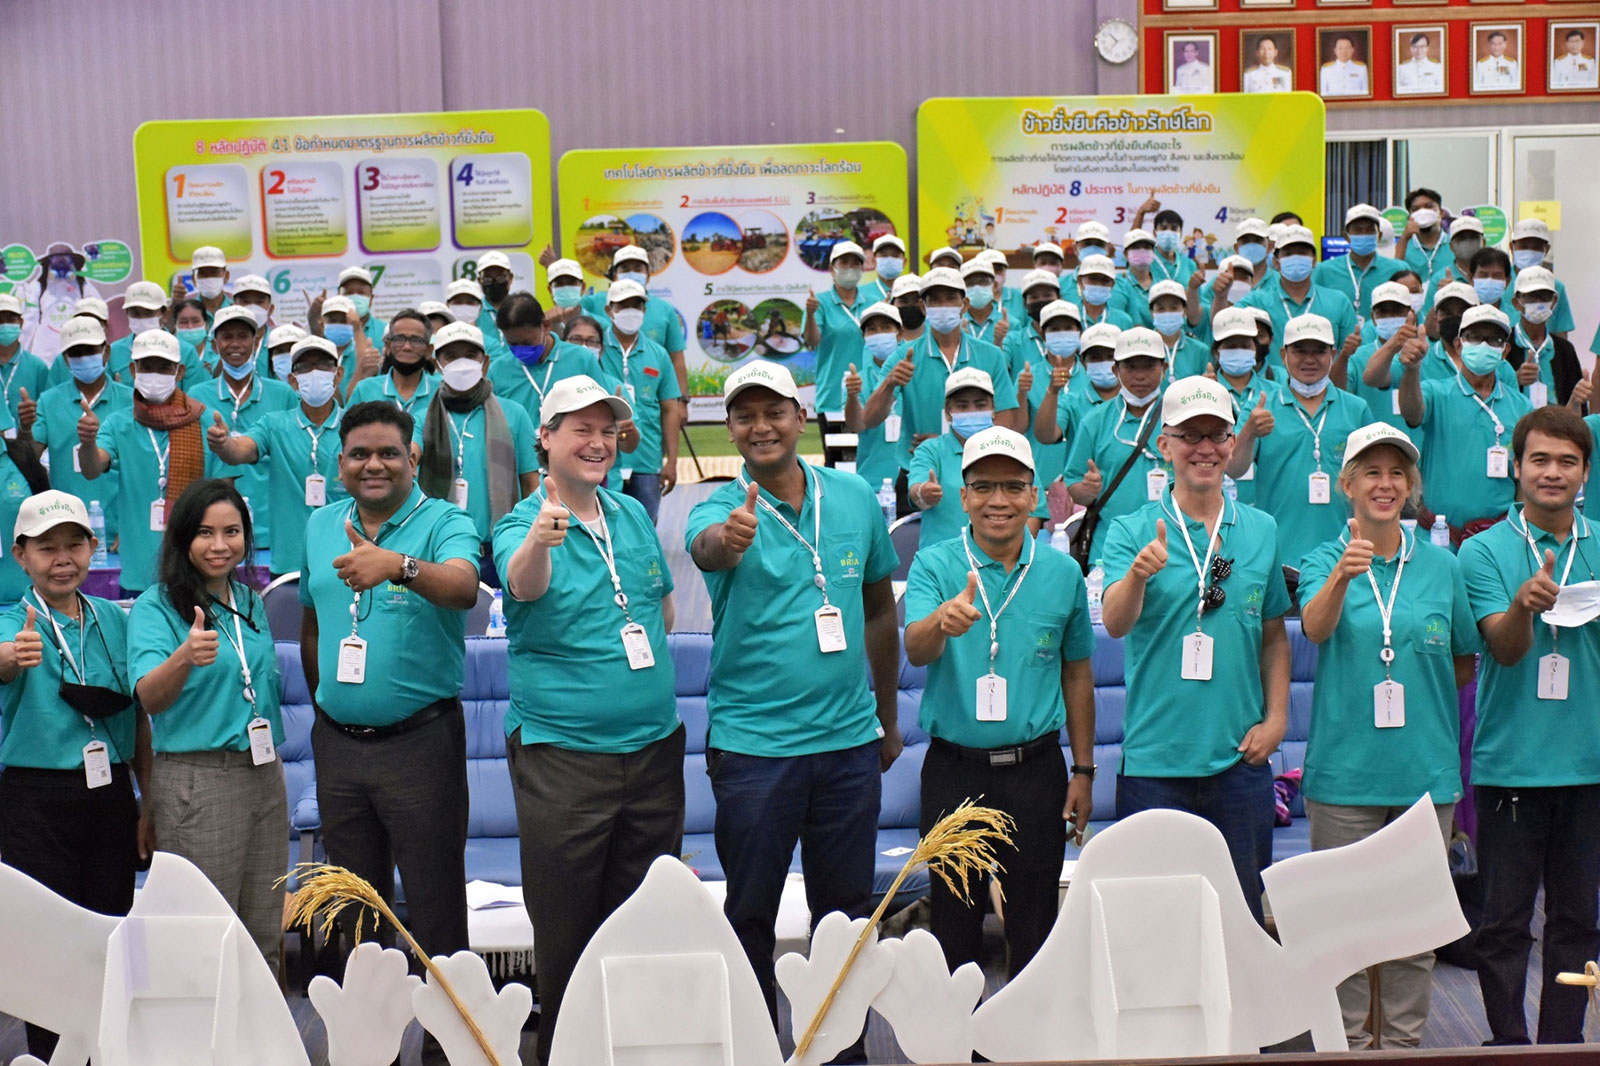 Group photo during closing event (ภาพกลุ่มทีมโอแลม เจ้าหน้าที่โครงการ MSVC ประเทศไทย และเกษตรกร)